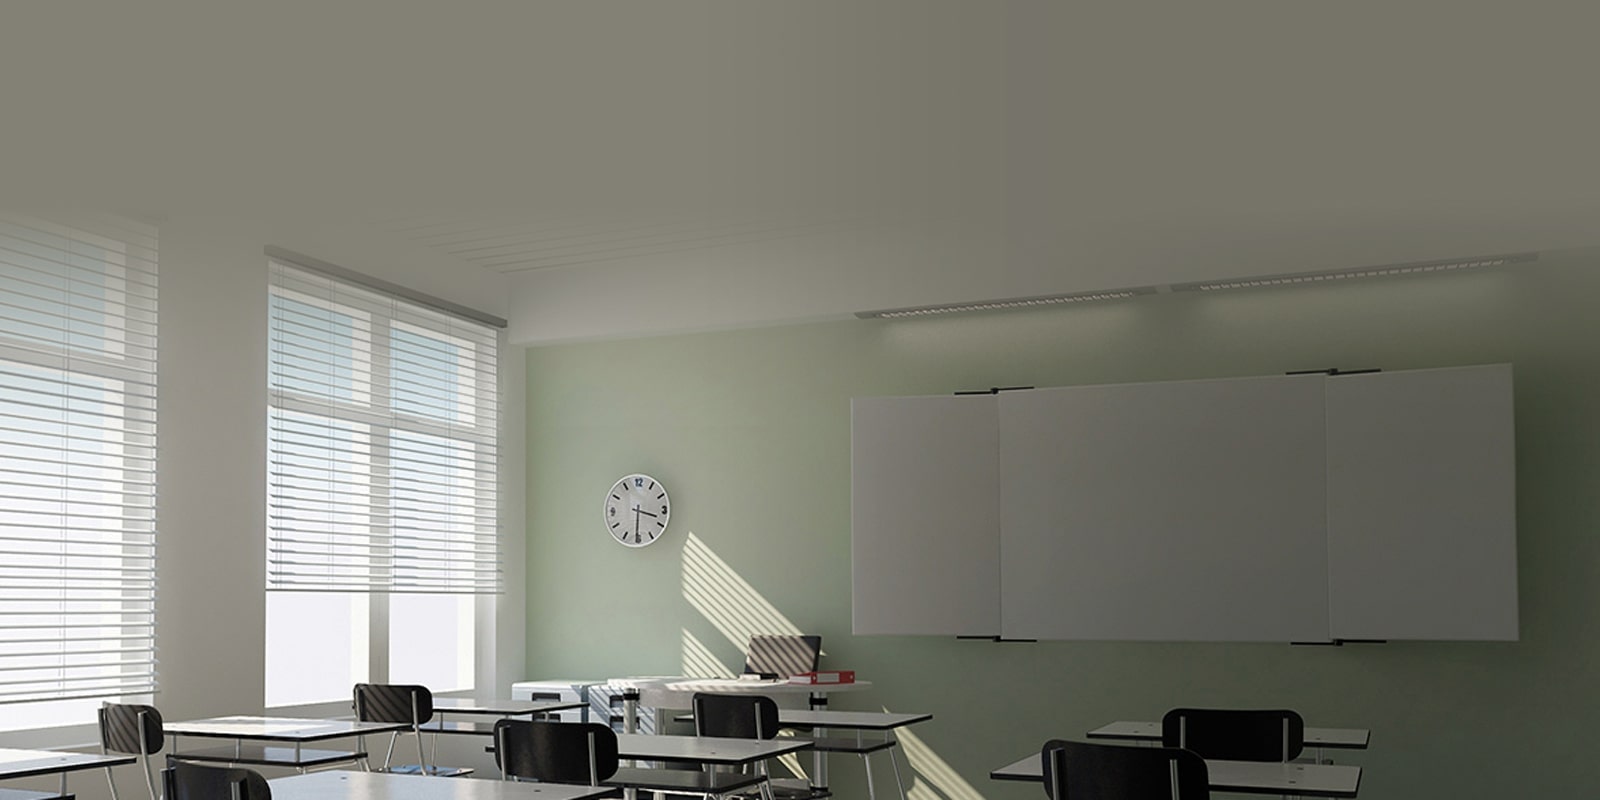 Một lớp học với ánh nắng chiếu qua cửa sổ, chiếc đồng hồ trên tường và vài bộ bàn ghế trước bảng đen.